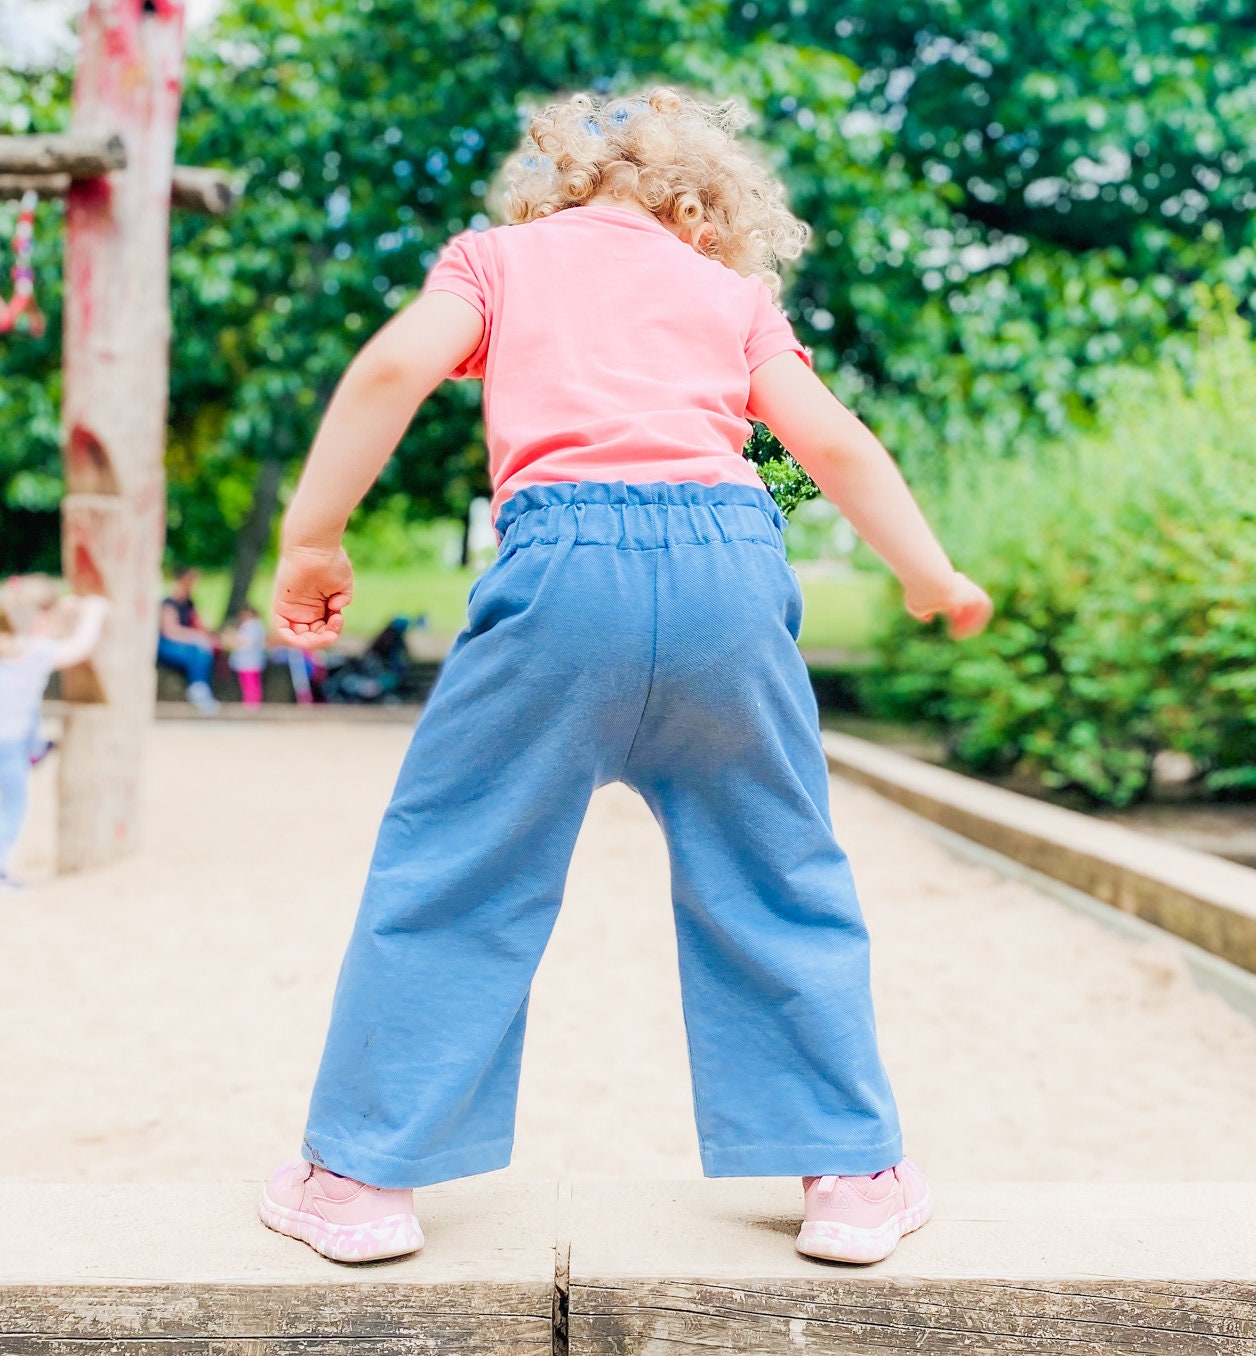 Weites Bein Hosen Schnittmuster für Kinder, Lexi Hose Culotte Stil  Kinderhose Schnittmuster, 9 Monate bis 10 Jahre, Papiertüte Taille Pans | Jogginghosen